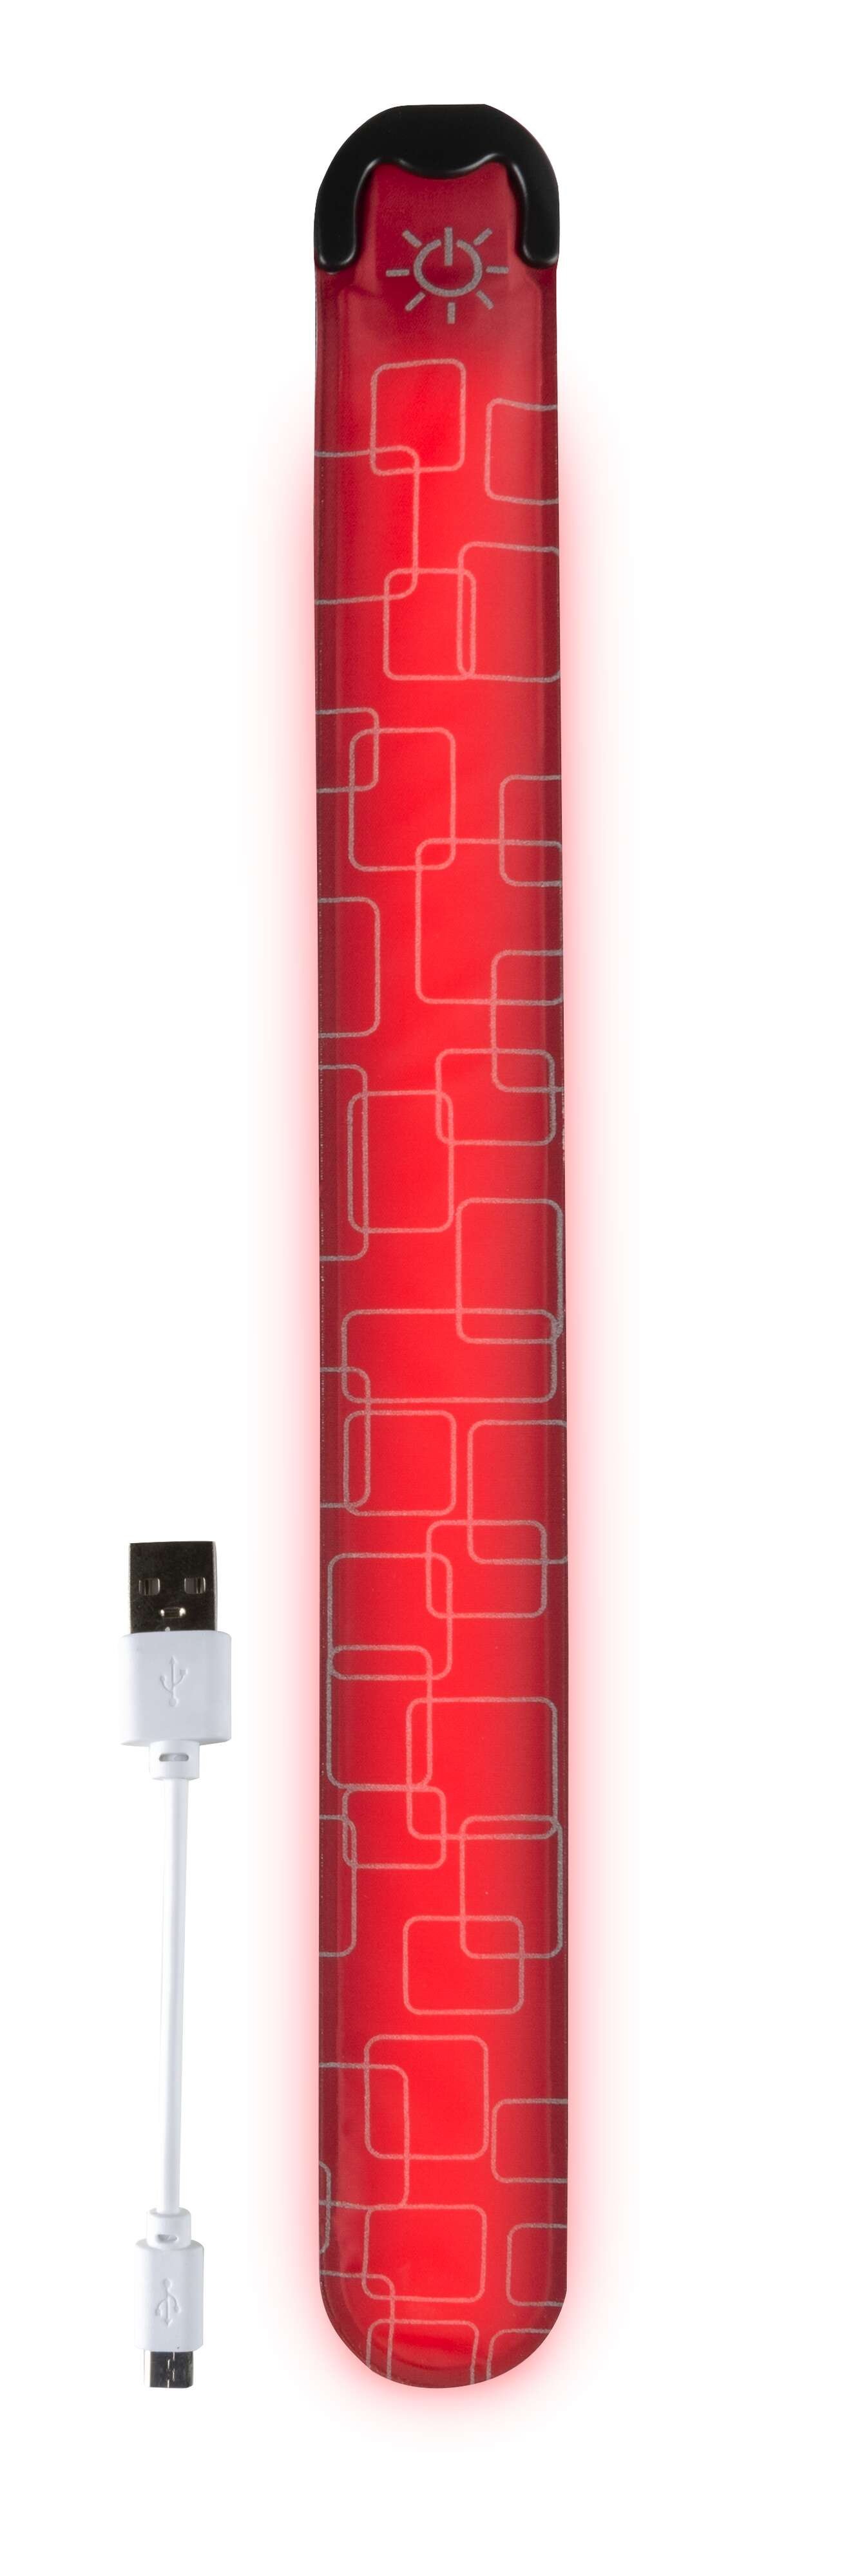 LED Klackband, leuchtendes Slap Wrap mit USB-Auflademöglichkeit 36x3,5 cm rot